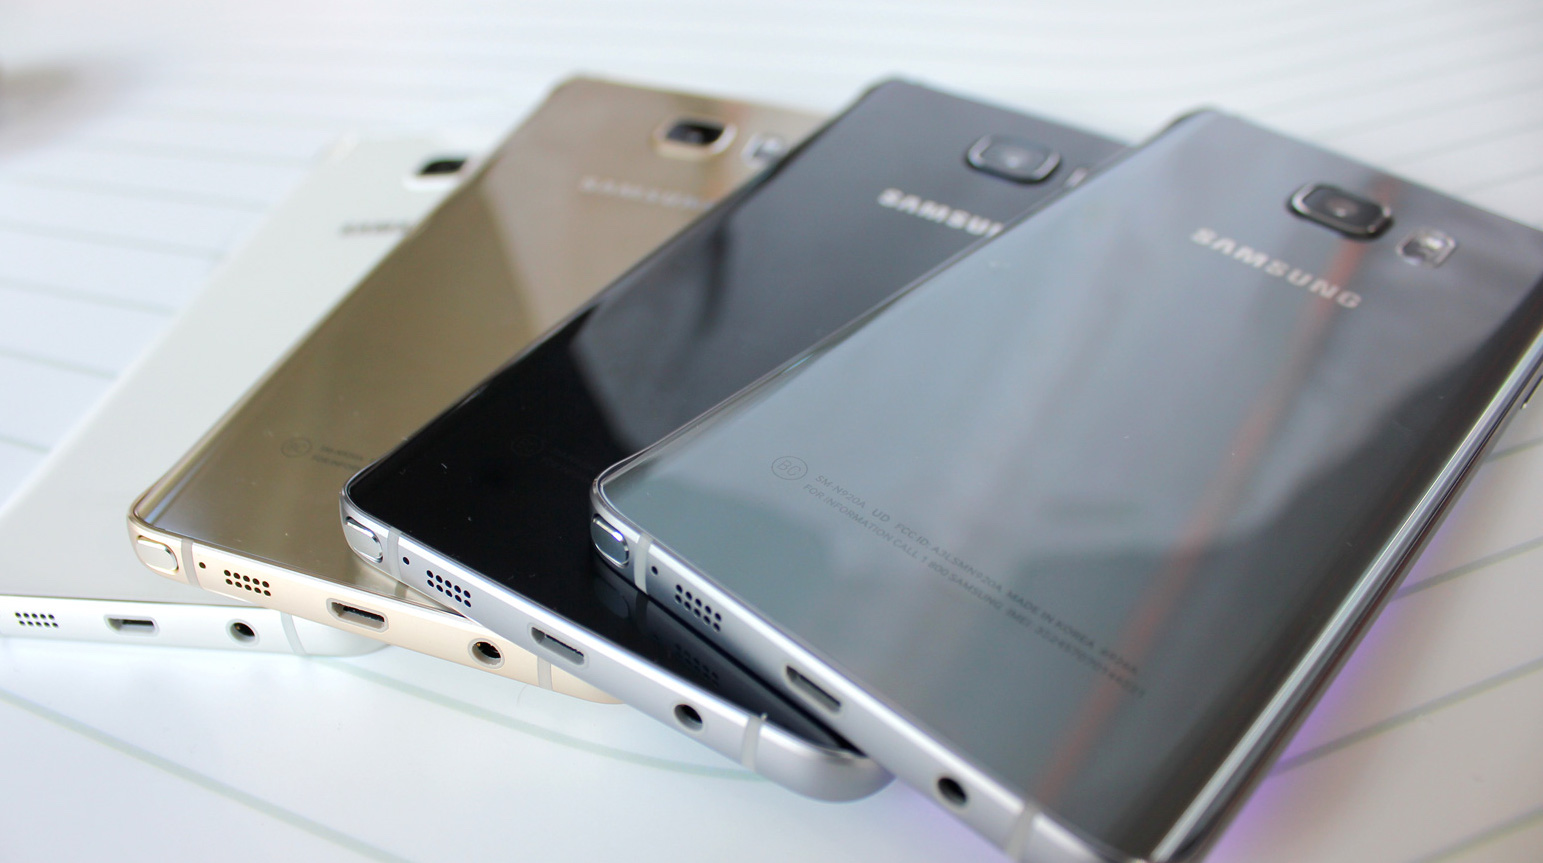 Il Samsung Galaxy Note 5 disponibile in oro, argento, bianco e nero zaffiro